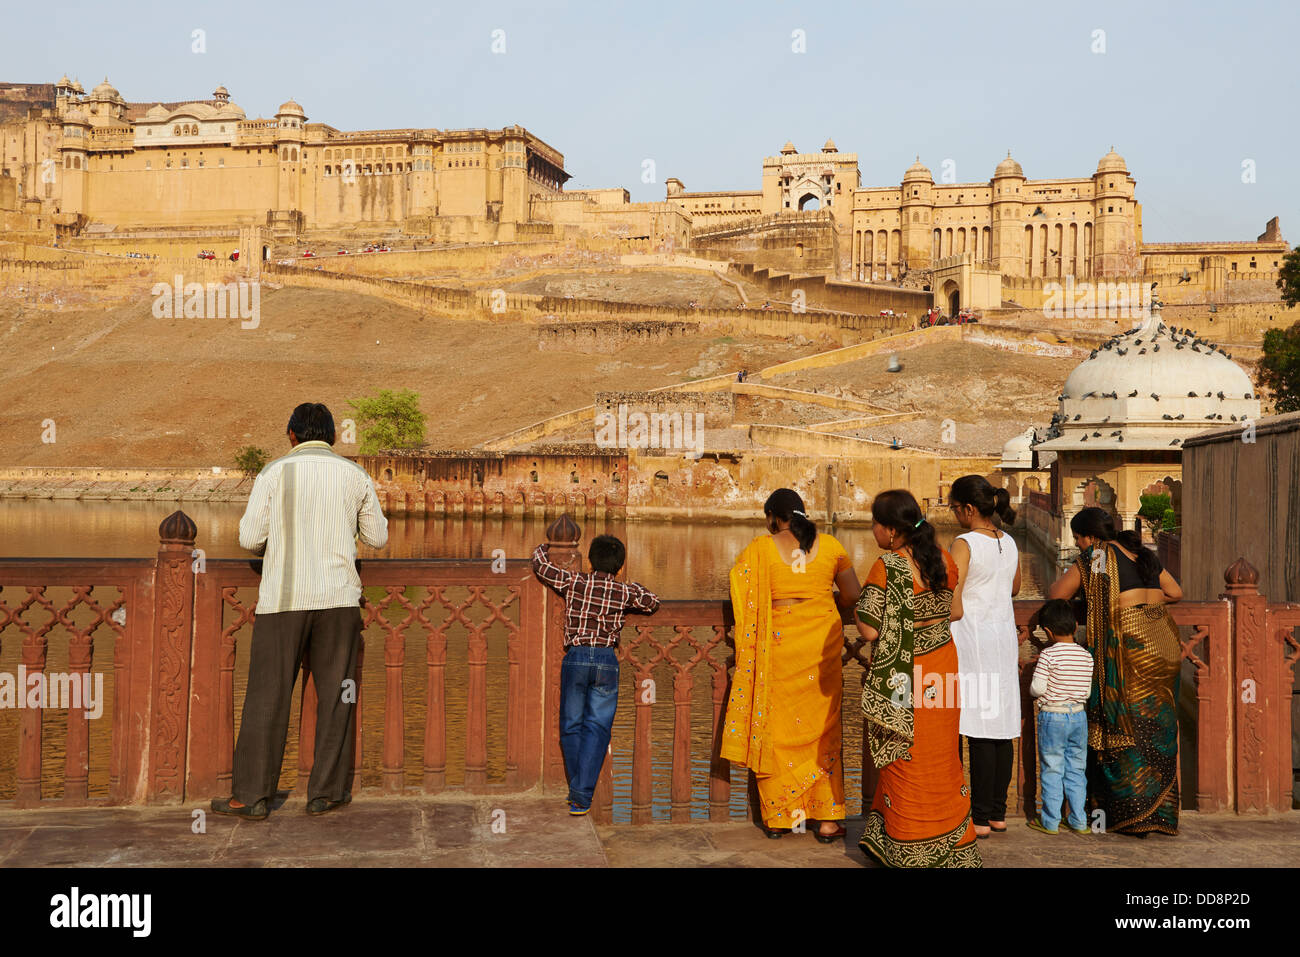 Inde, Rajasthan, Jaipur la Ville Rose, le-Fort-d'Amber / / Indien, Rajasthan, Jaipur, die rosa Stadt Amber Fort Stockfoto